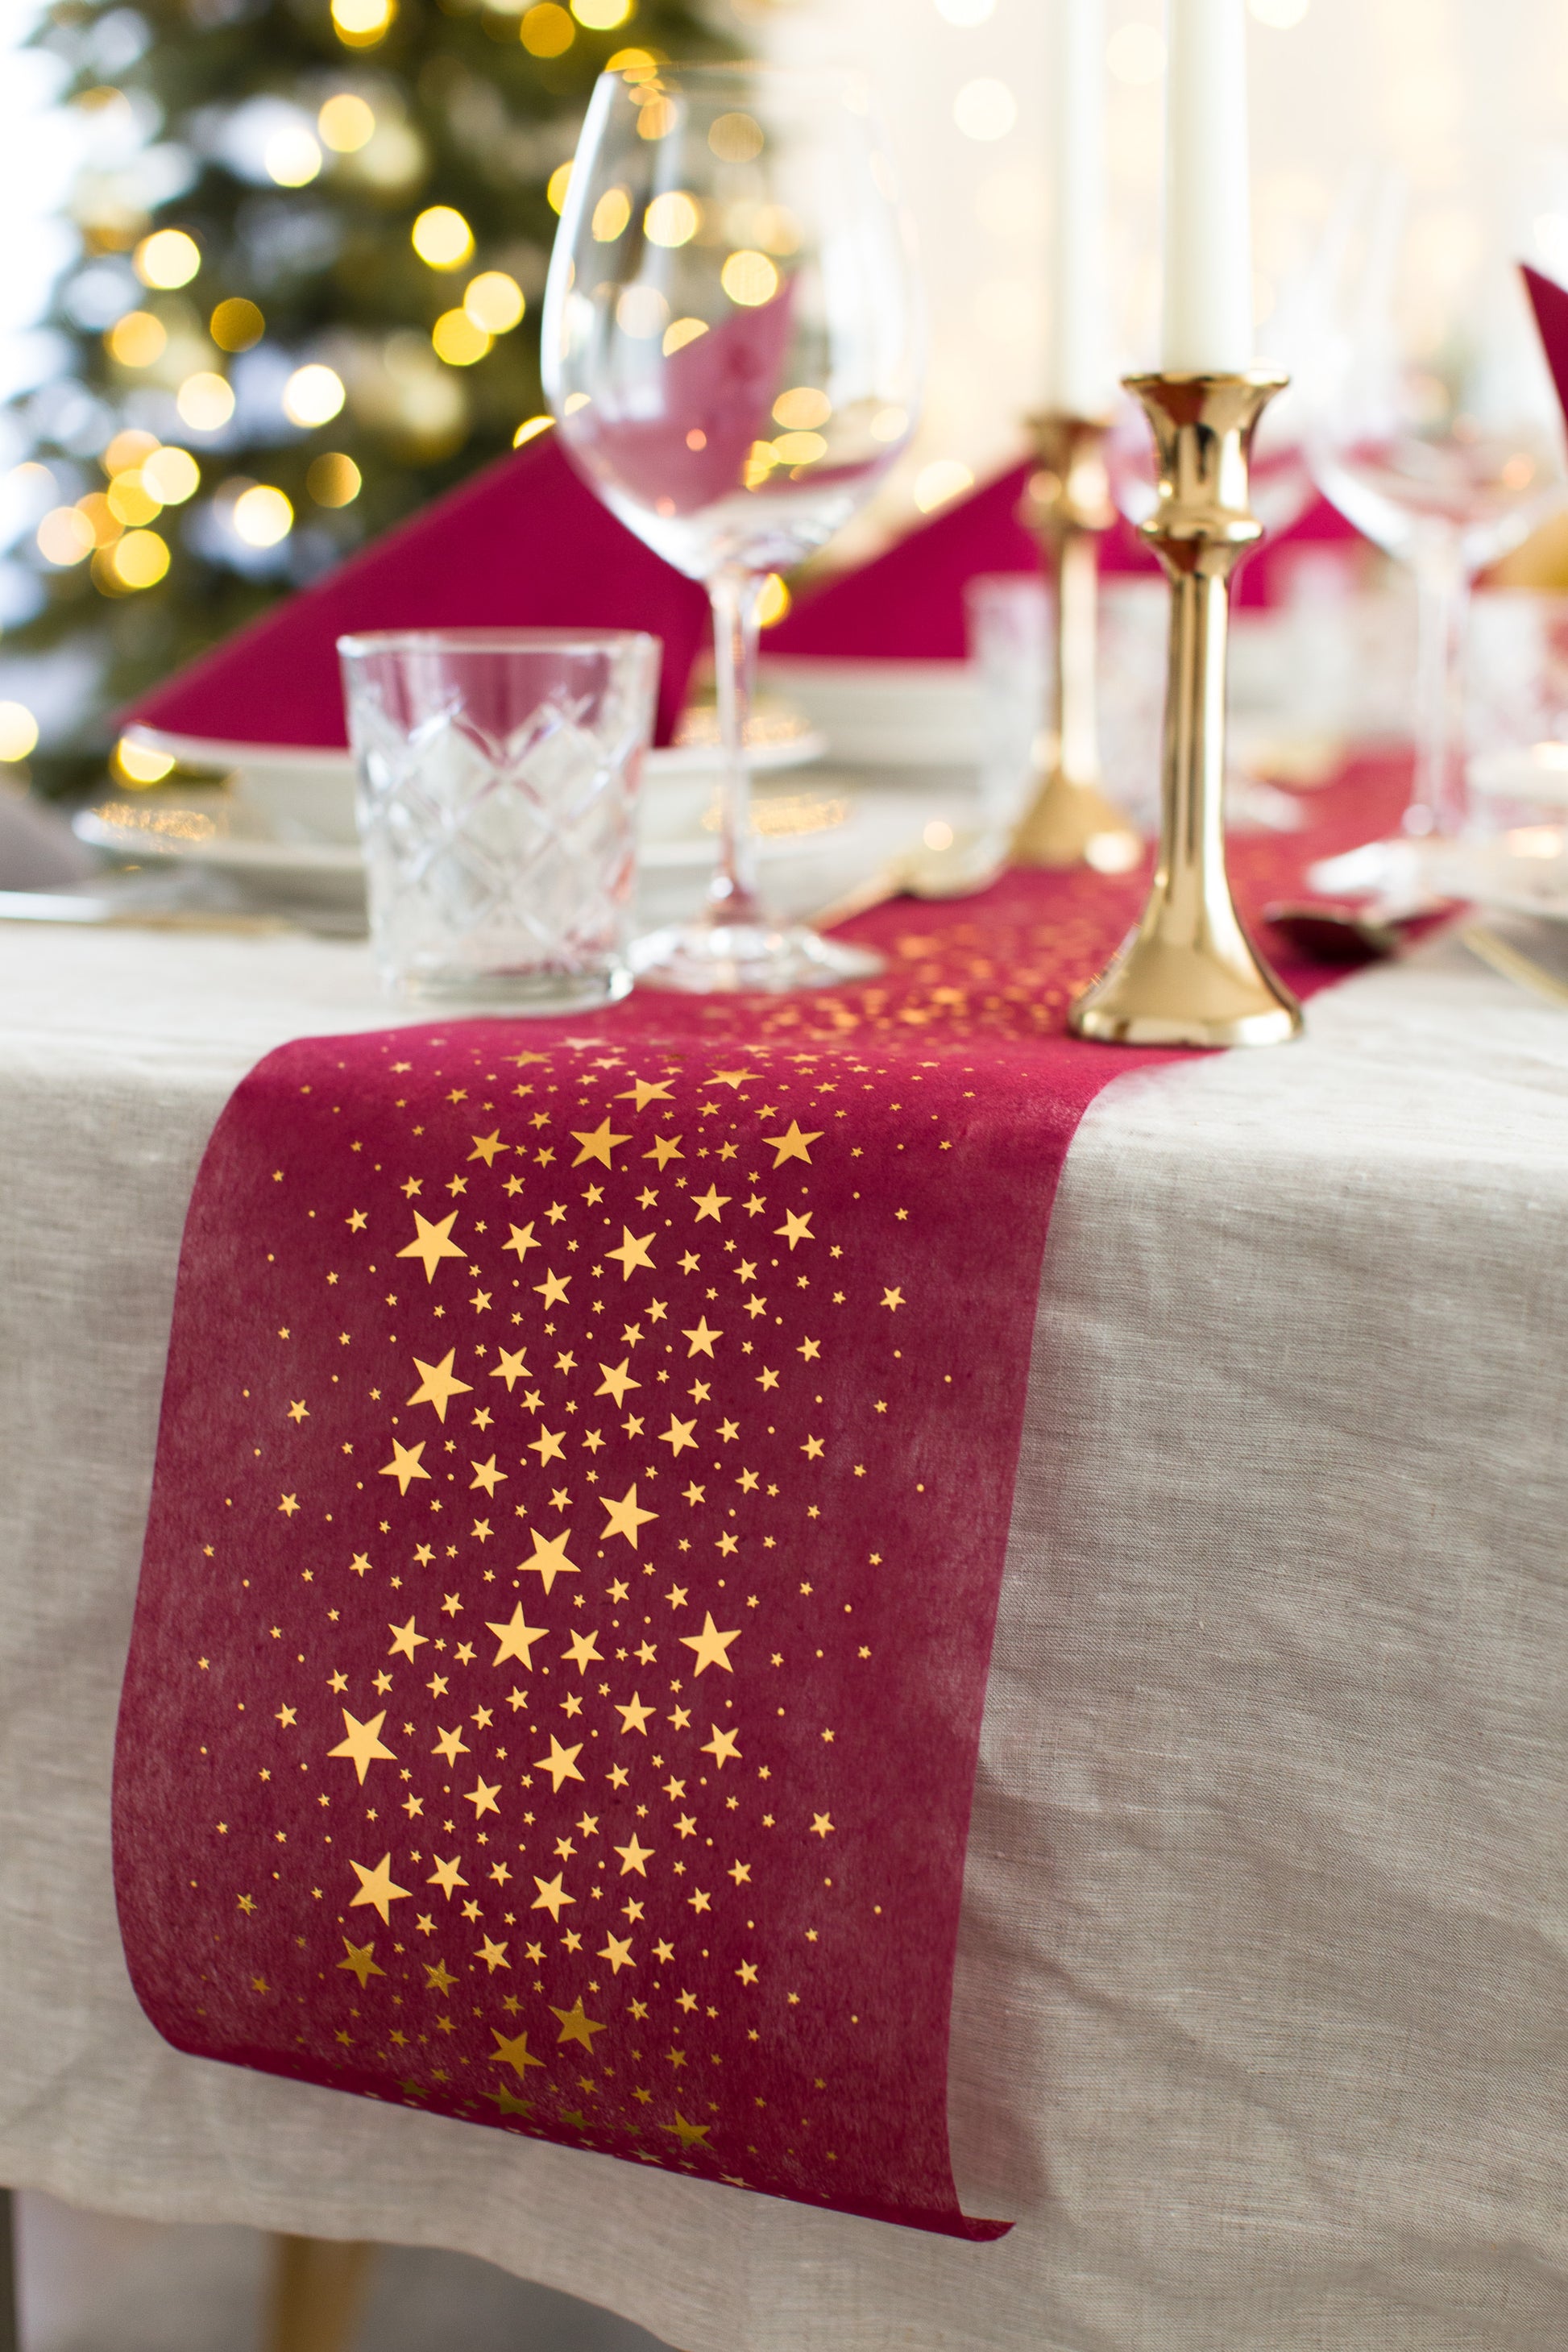 Tischläufer für Weihnachten in Bordeaux Rot mit goldenen Sternen - 100%Mosel